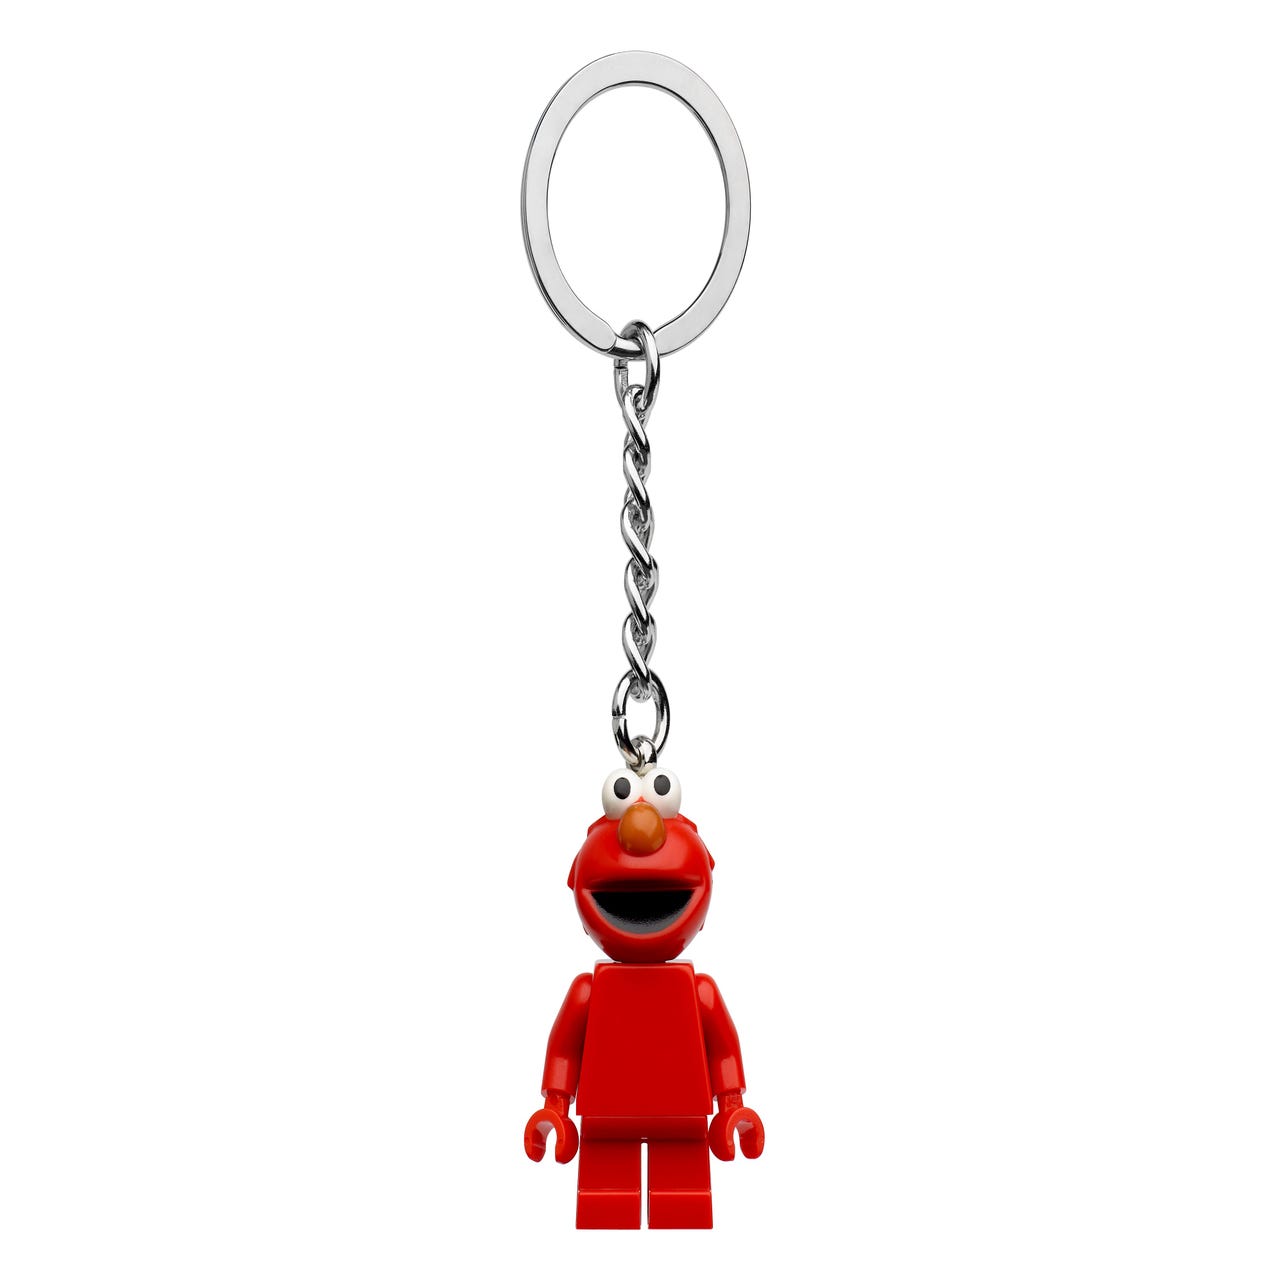 Beschrijving Gemeenten mesh Elmo sleutelhanger 854145 | Overig | Officiële LEGO® winkel NL